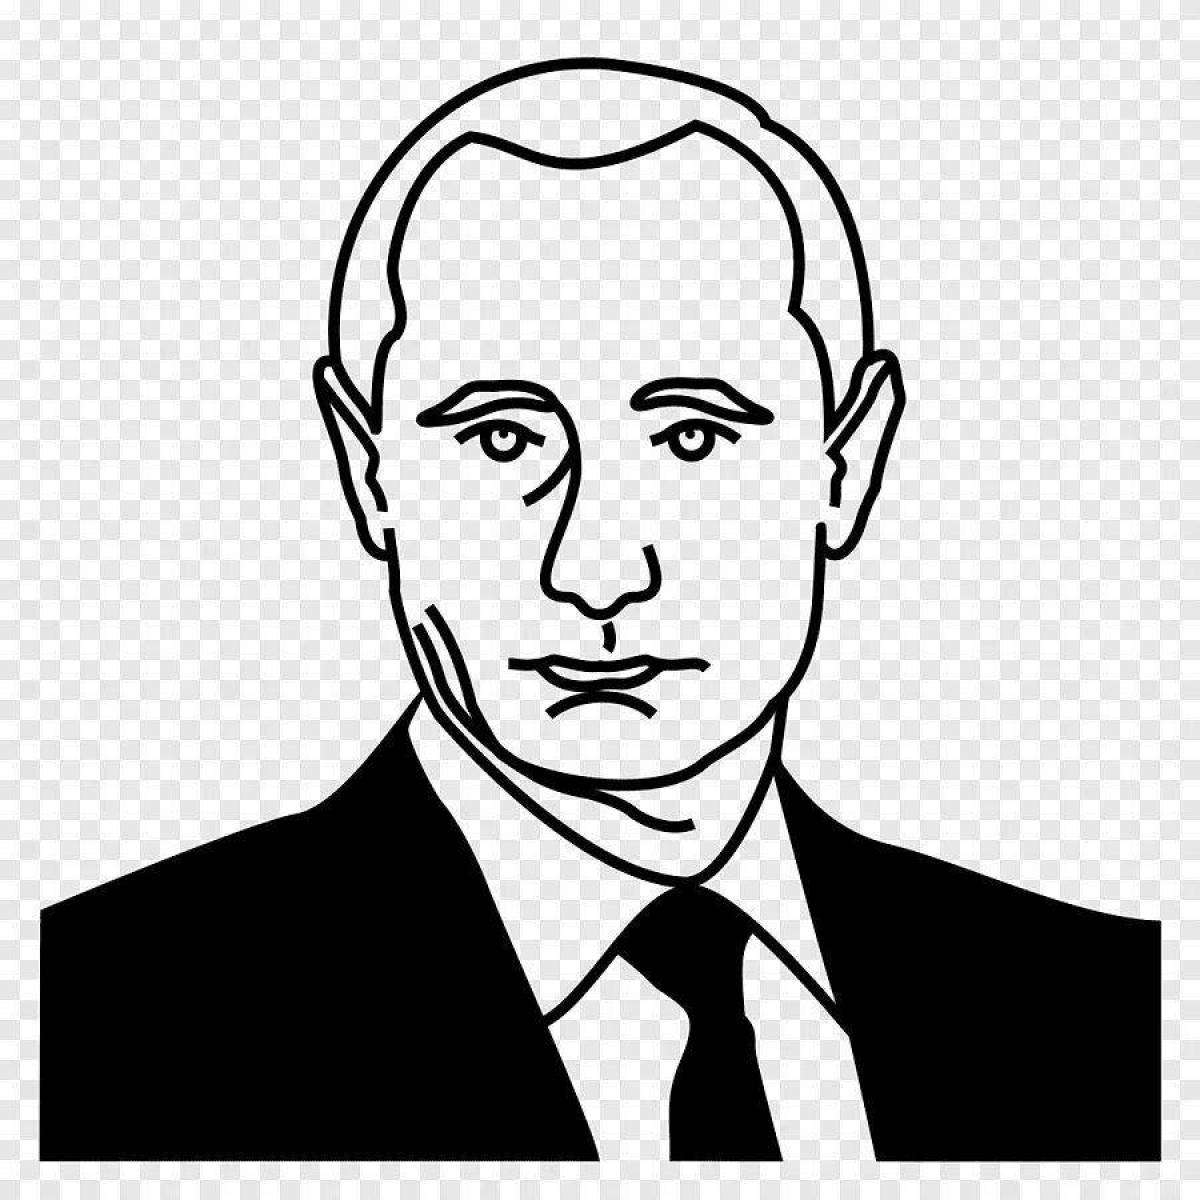 Putin Vladimir Vladimirovich #2